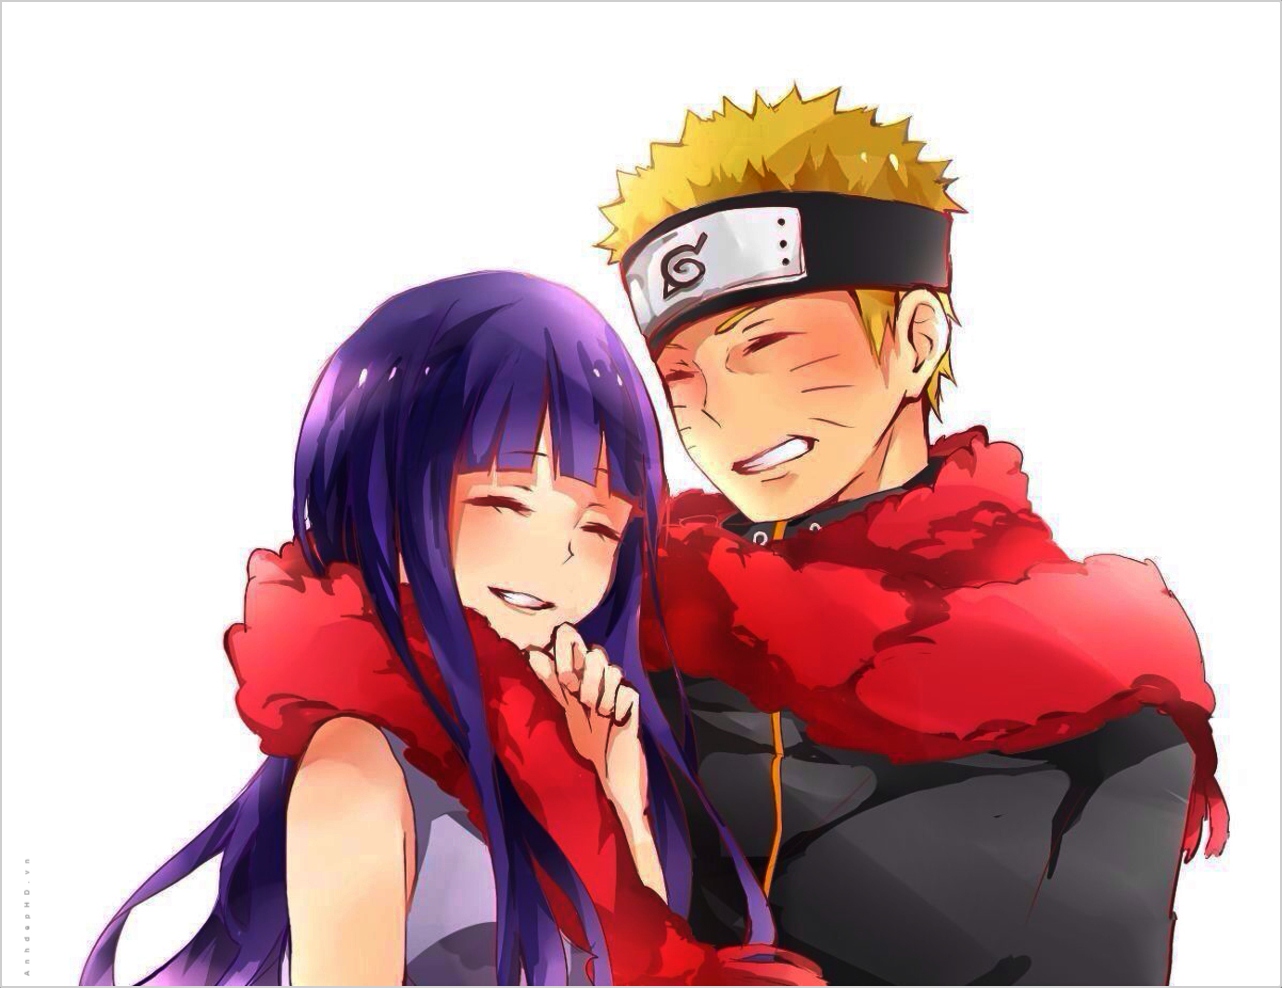 Naruto và Hinata đã cùng nhau trải qua rất nhiều khó khăn, nhưng họ vẫn giữ mãi tình yêu của mình. Hình ảnh Naruto và Hinata hạnh phúc sẽ làm tan chảy trái tim của bạn và khiến bạn mong muốn tìm hiểu thêm về câu chuyện của họ.